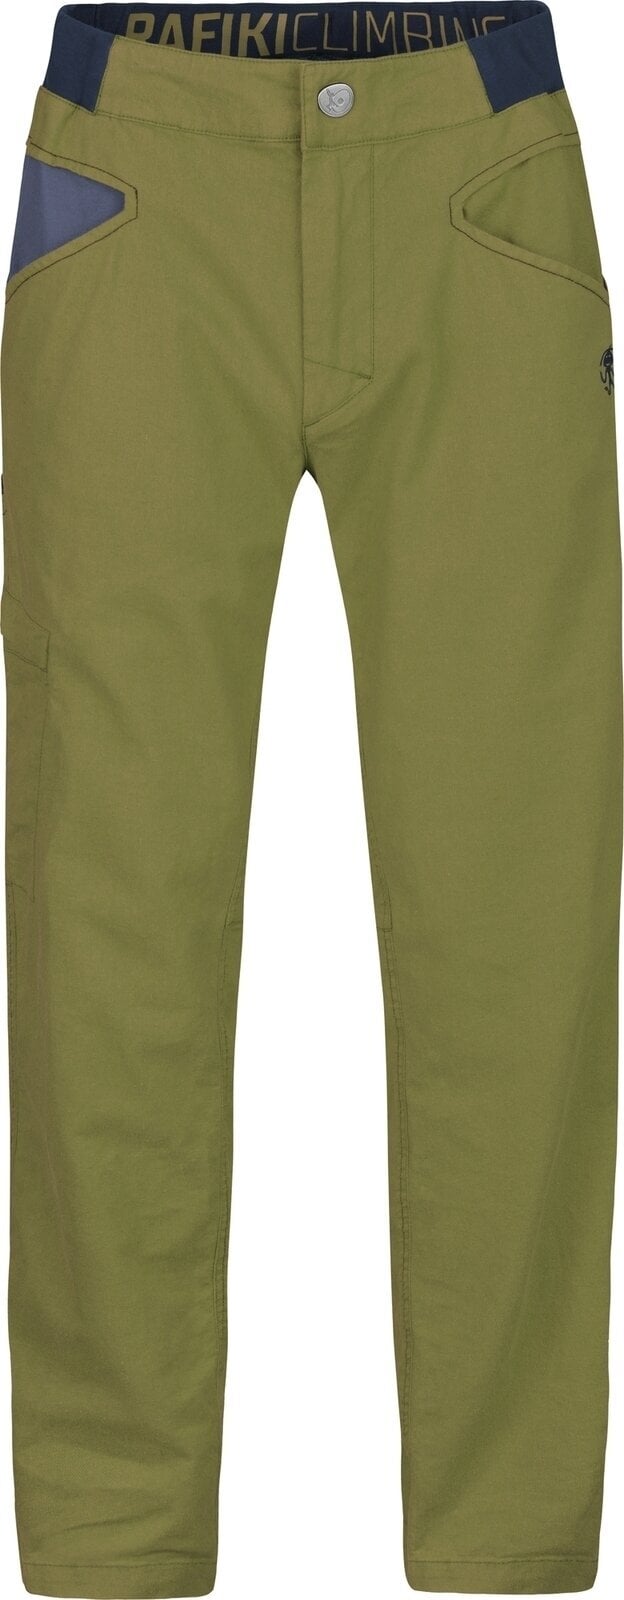 Pantalones para exteriores Rafiki Grip Man Pants Avocado XL Pantalones para exteriores